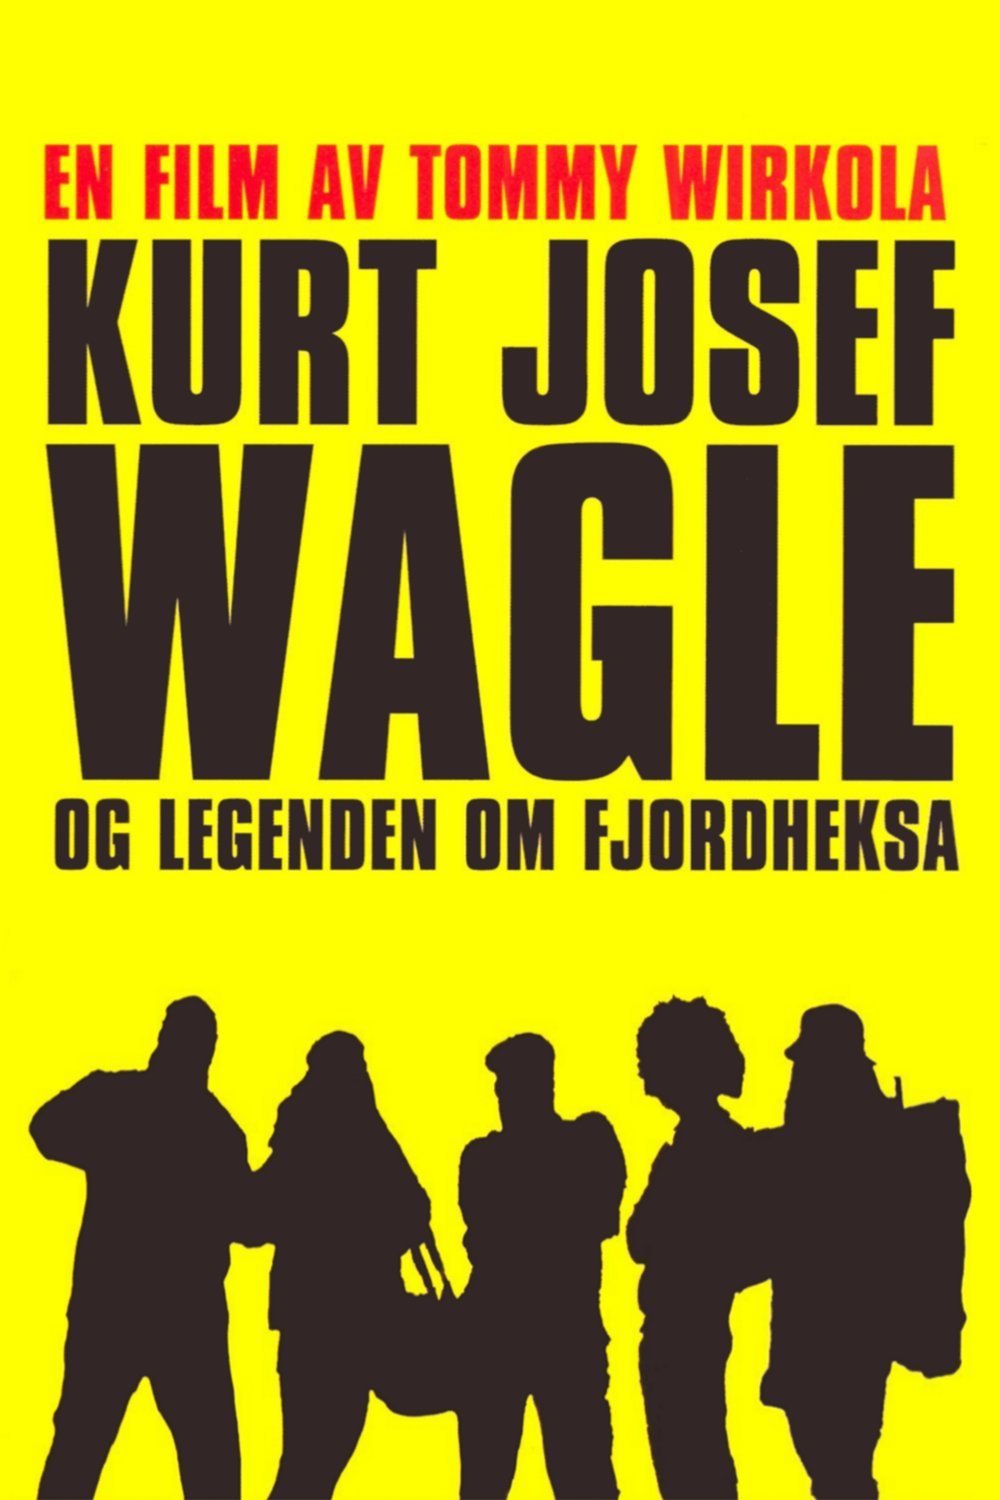  فیلم سینمایی Kurt Josef Wagle og legenden om Fjordheksa به کارگردانی Tommy Wirkola